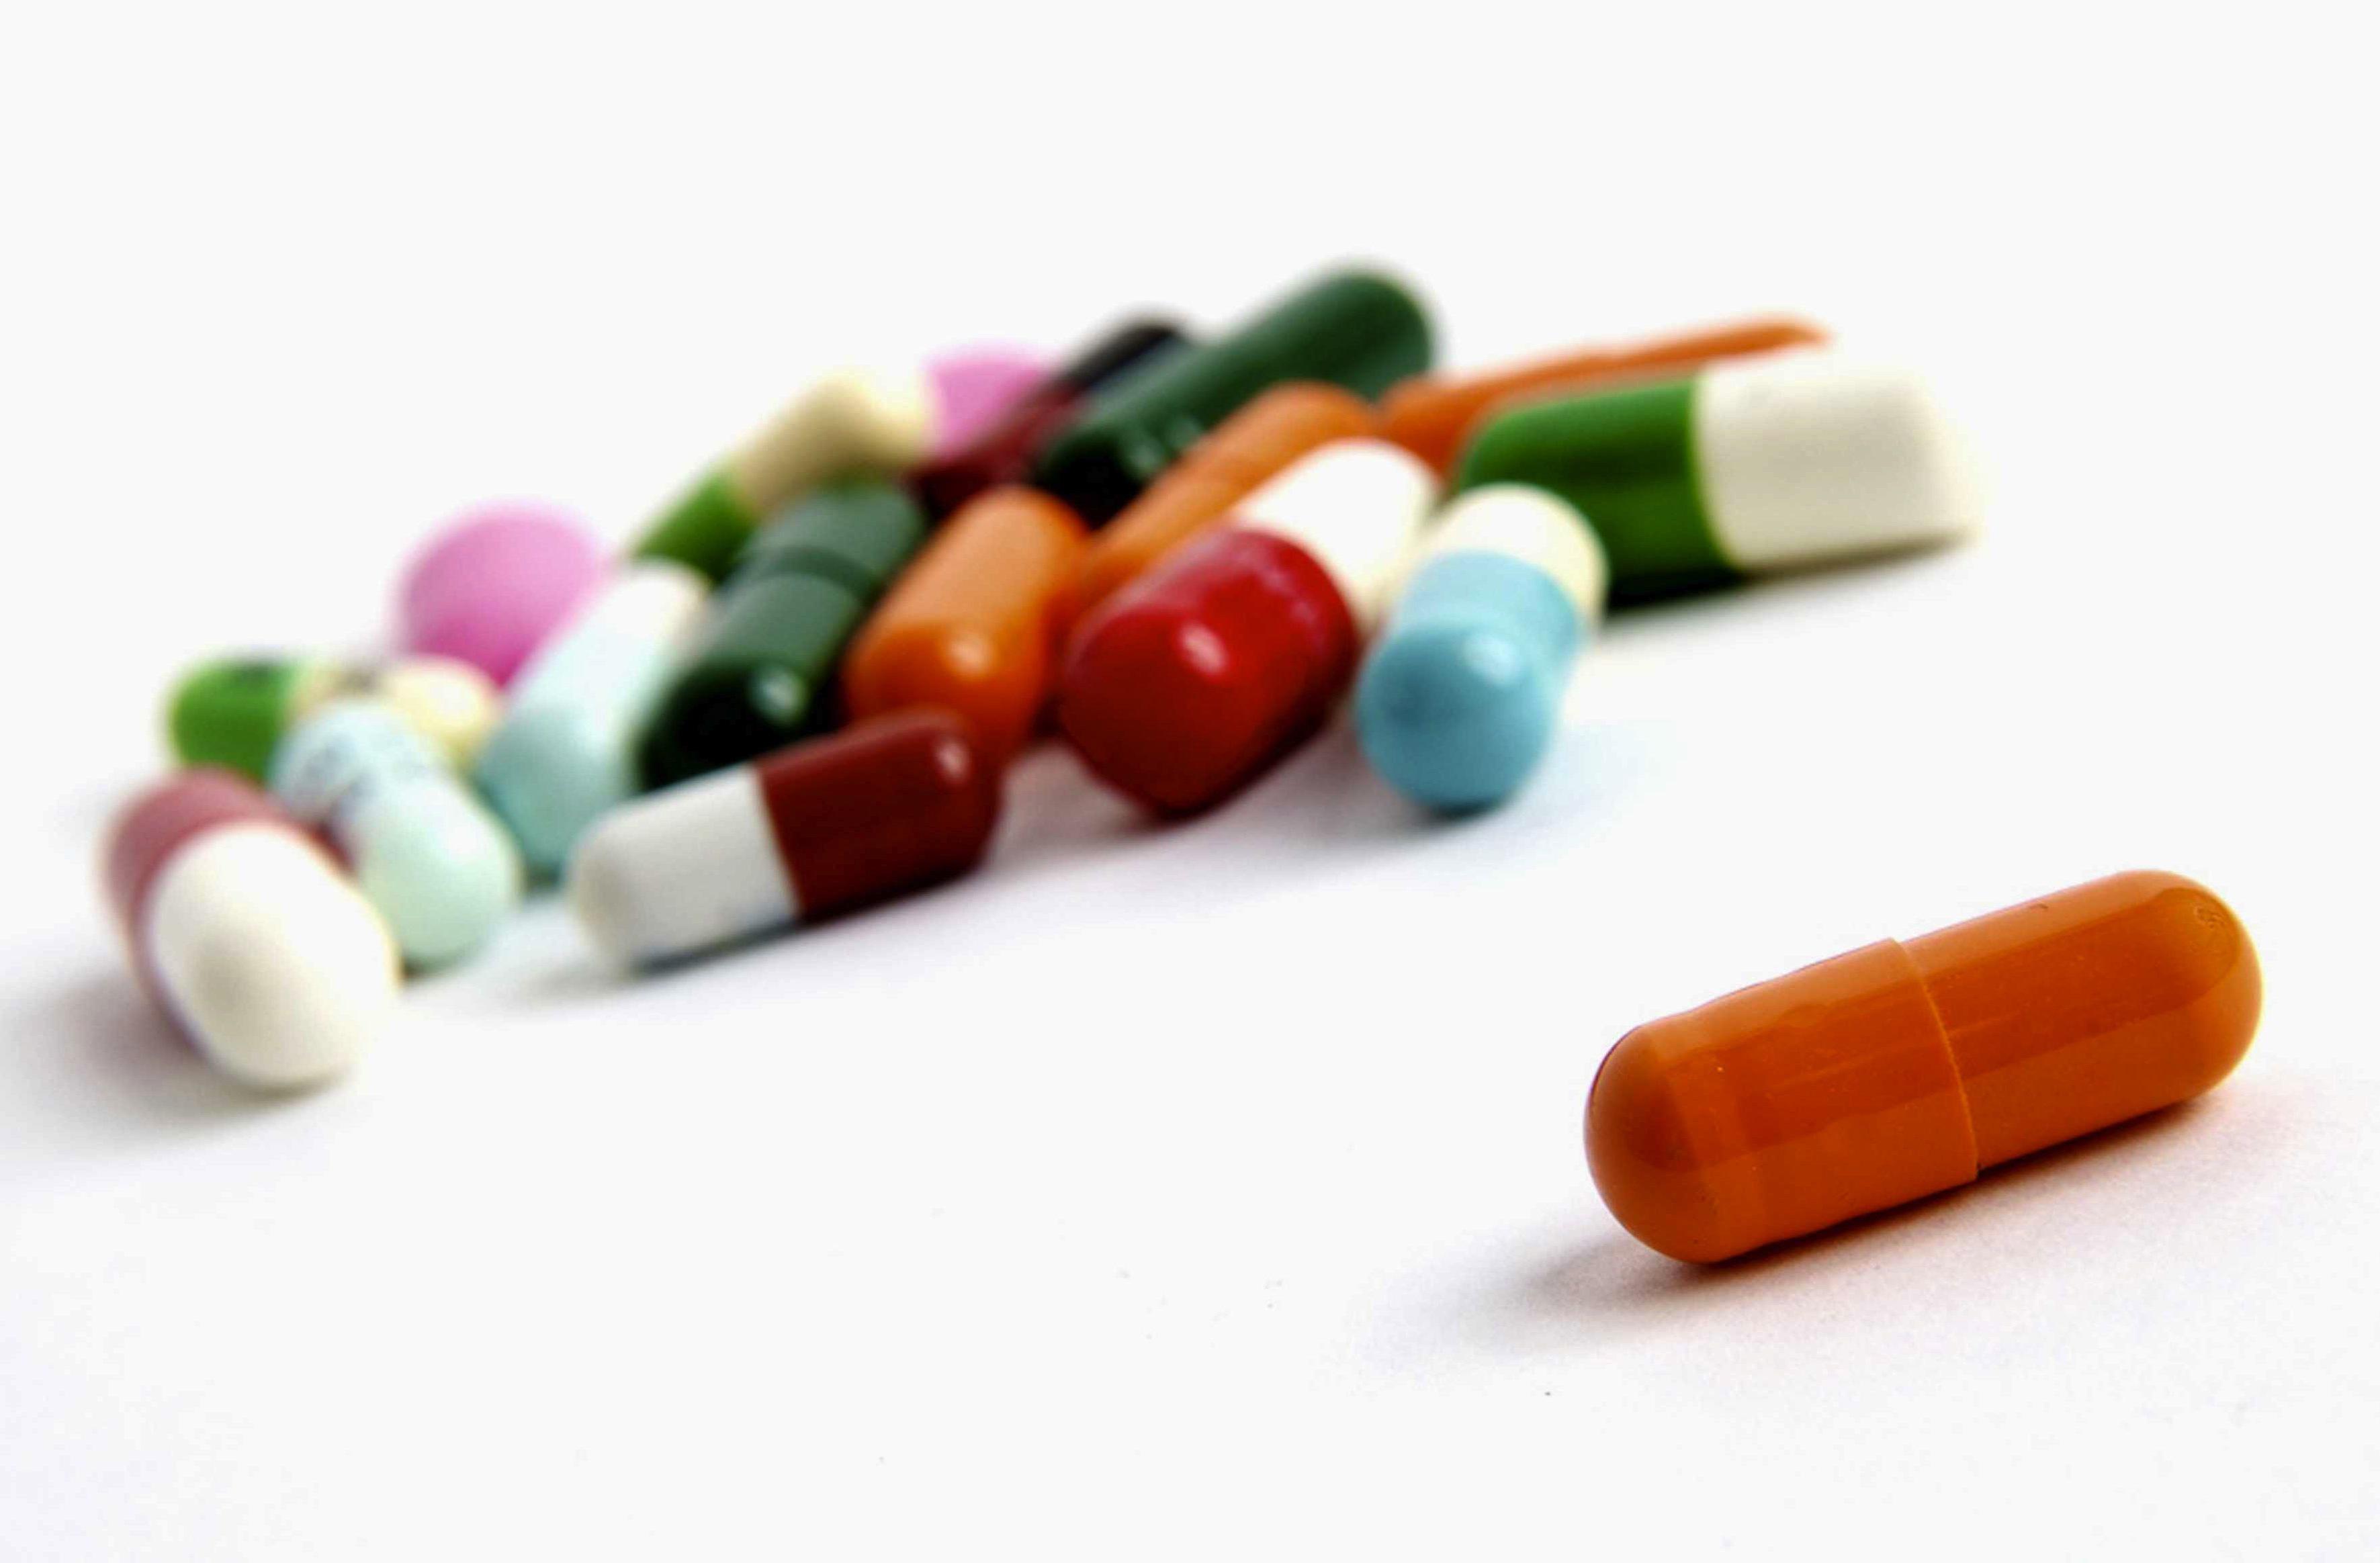 La consommation d\'antibiotiques repart à la hausse 